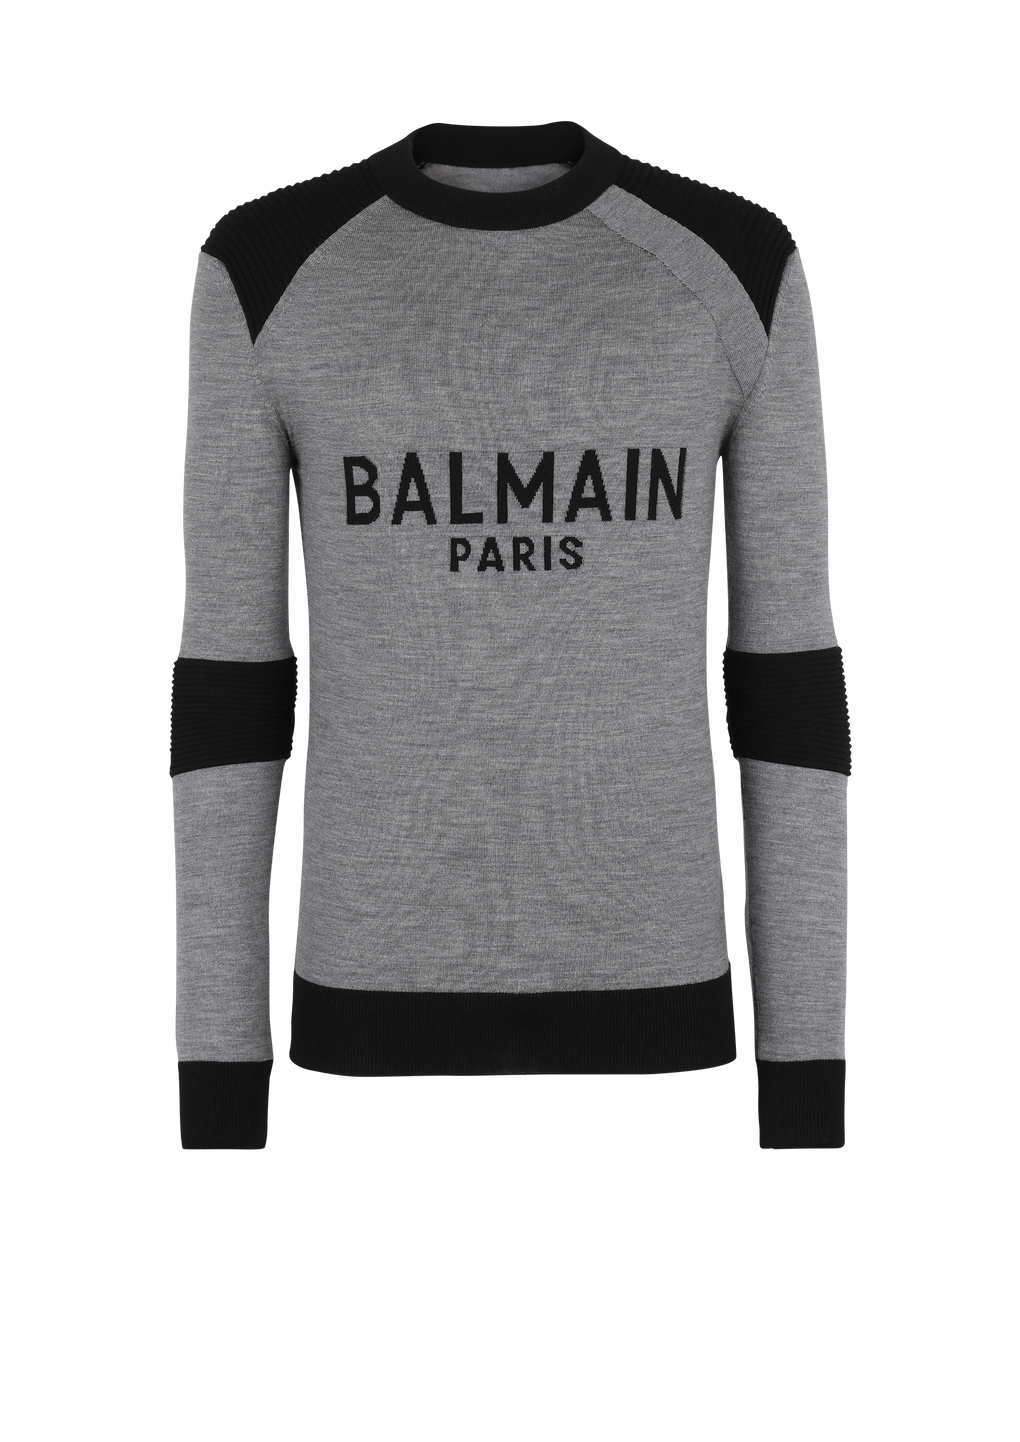 Pull en laine à logo Balmain Paris, gris, hi-res